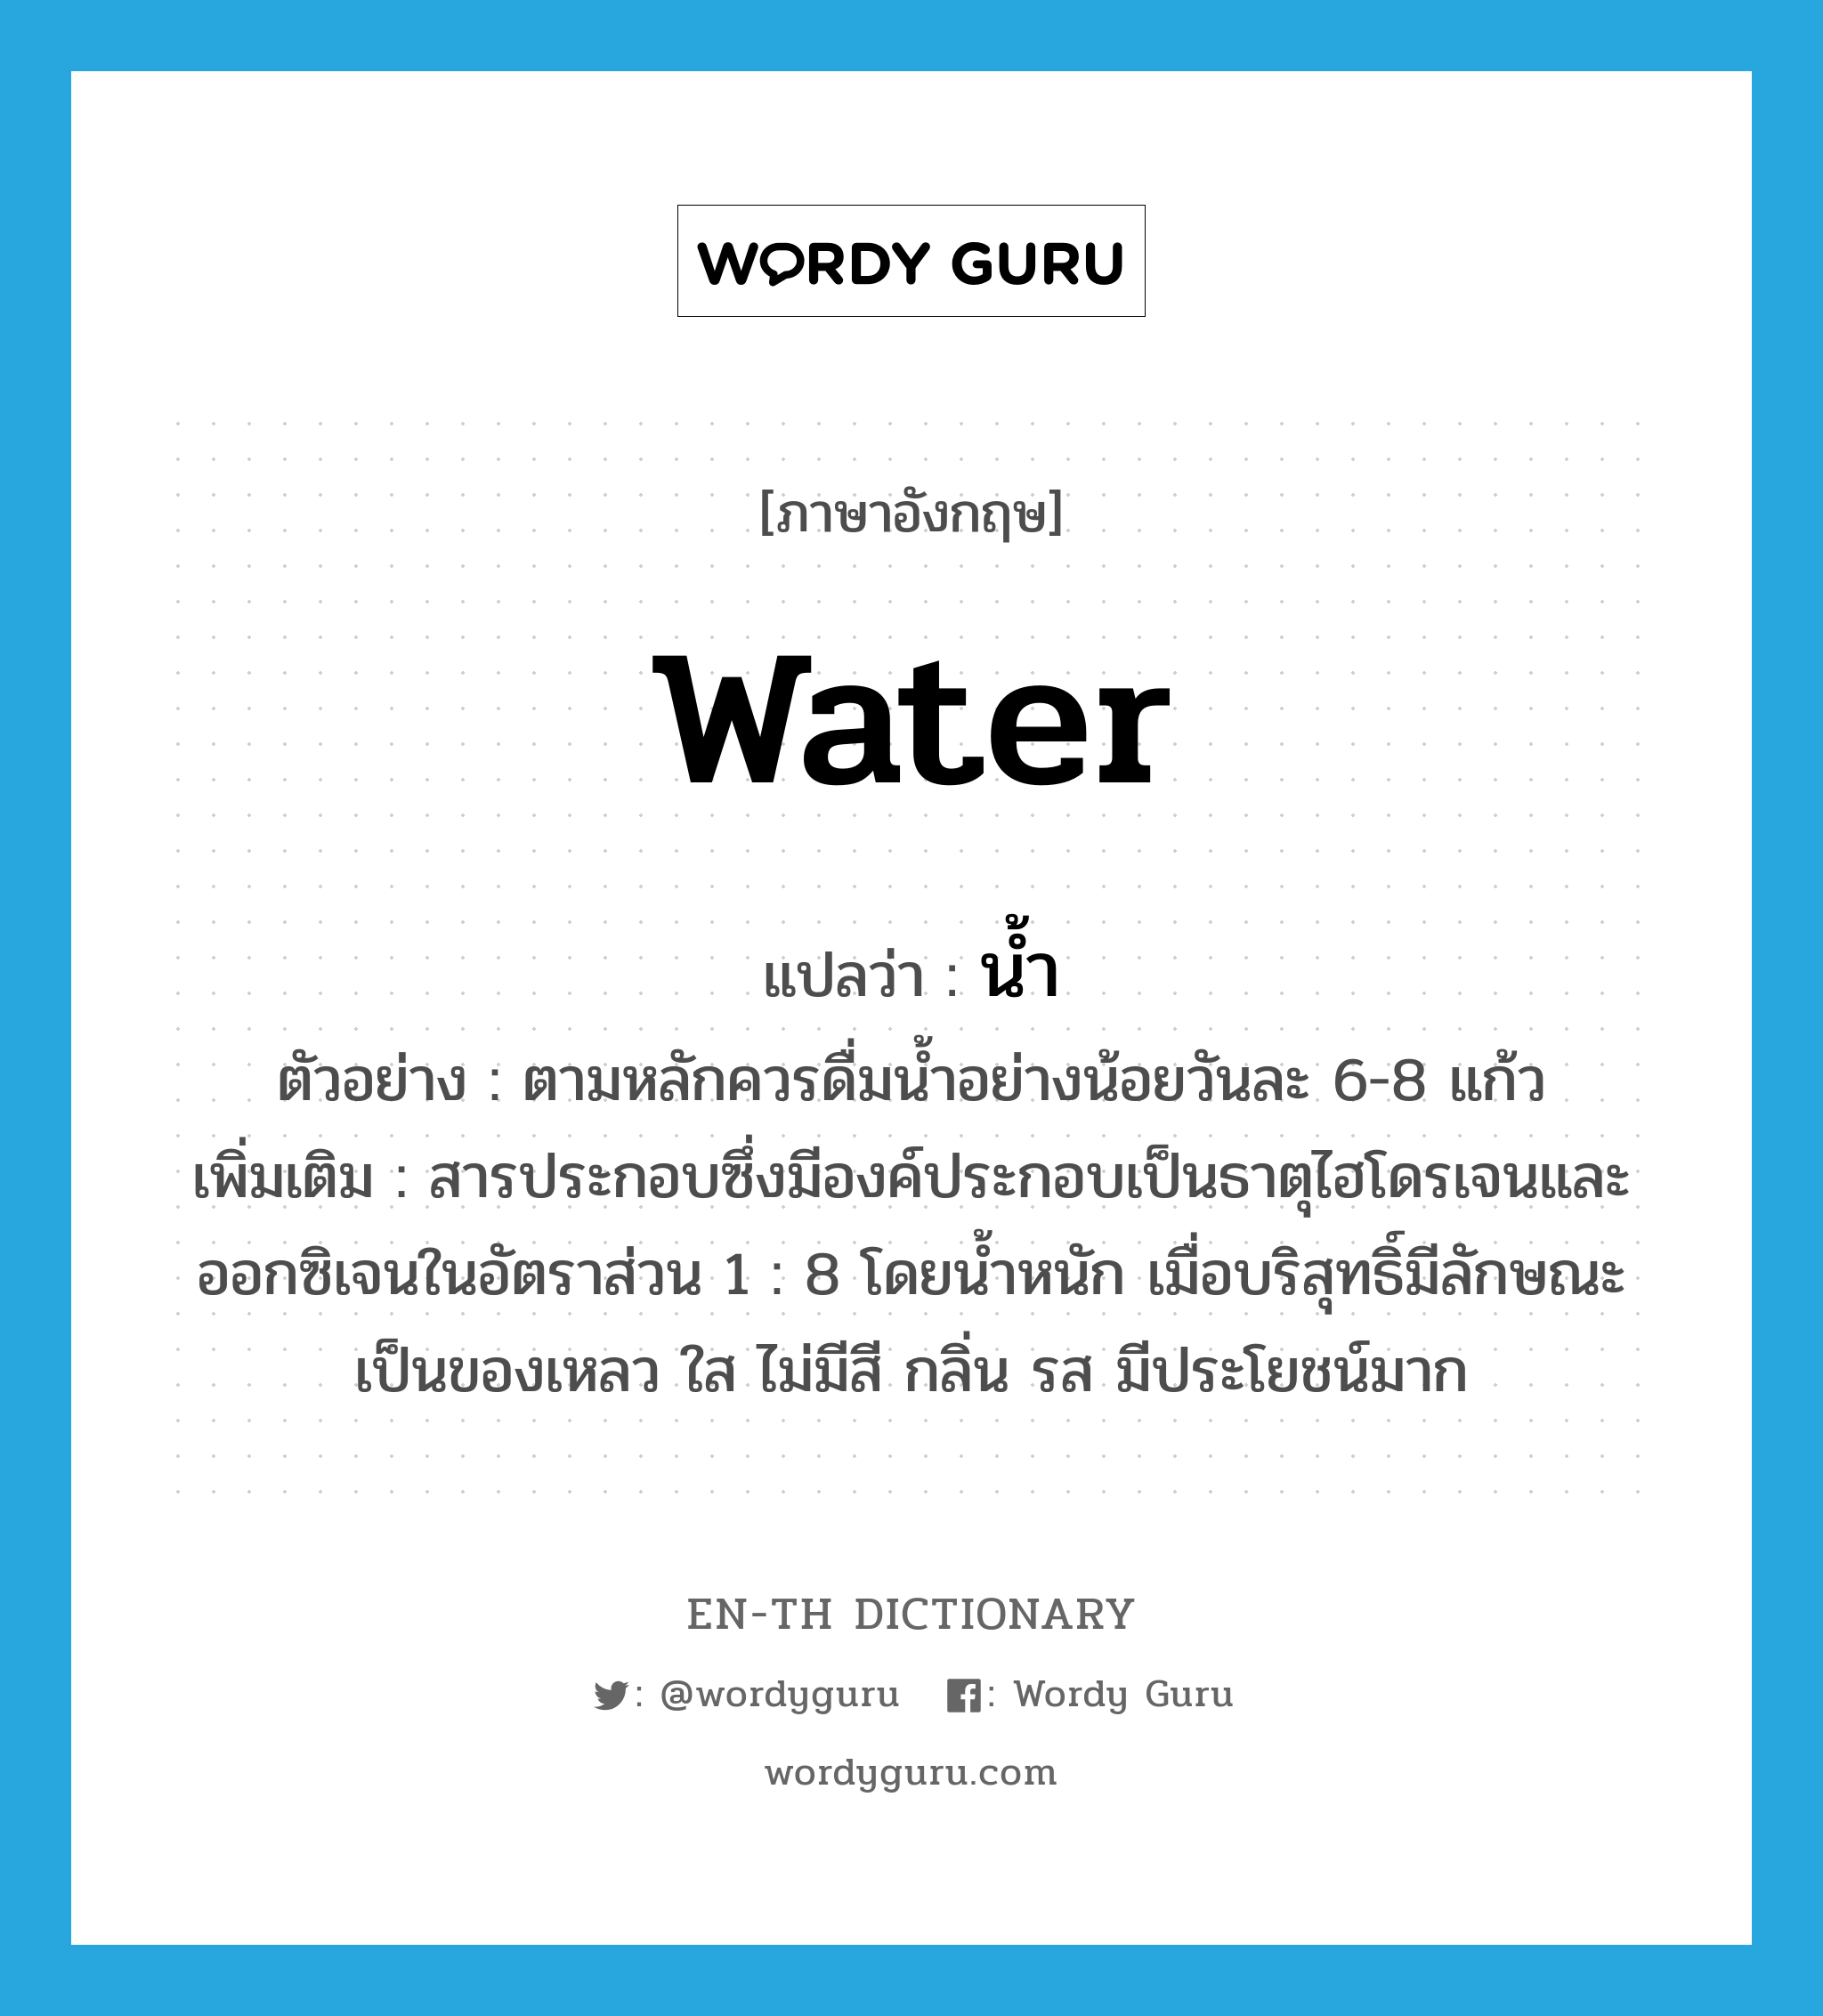 น้ำ ภาษาอังกฤษ?, คำศัพท์ภาษาอังกฤษ น้ำ แปลว่า water ประเภท N ตัวอย่าง ตามหลักควรดื่มน้ำอย่างน้อยวันละ 6-8 แก้ว เพิ่มเติม สารประกอบซึ่งมีองค์ประกอบเป็นธาตุไฮโดรเจนและออกซิเจนในอัตราส่วน 1 : 8 โดยน้ำหนัก เมื่อบริสุทธิ์มีลักษณะเป็นของเหลว ใส ไม่มีสี กลิ่น รส มีประโยชน์มาก หมวด N